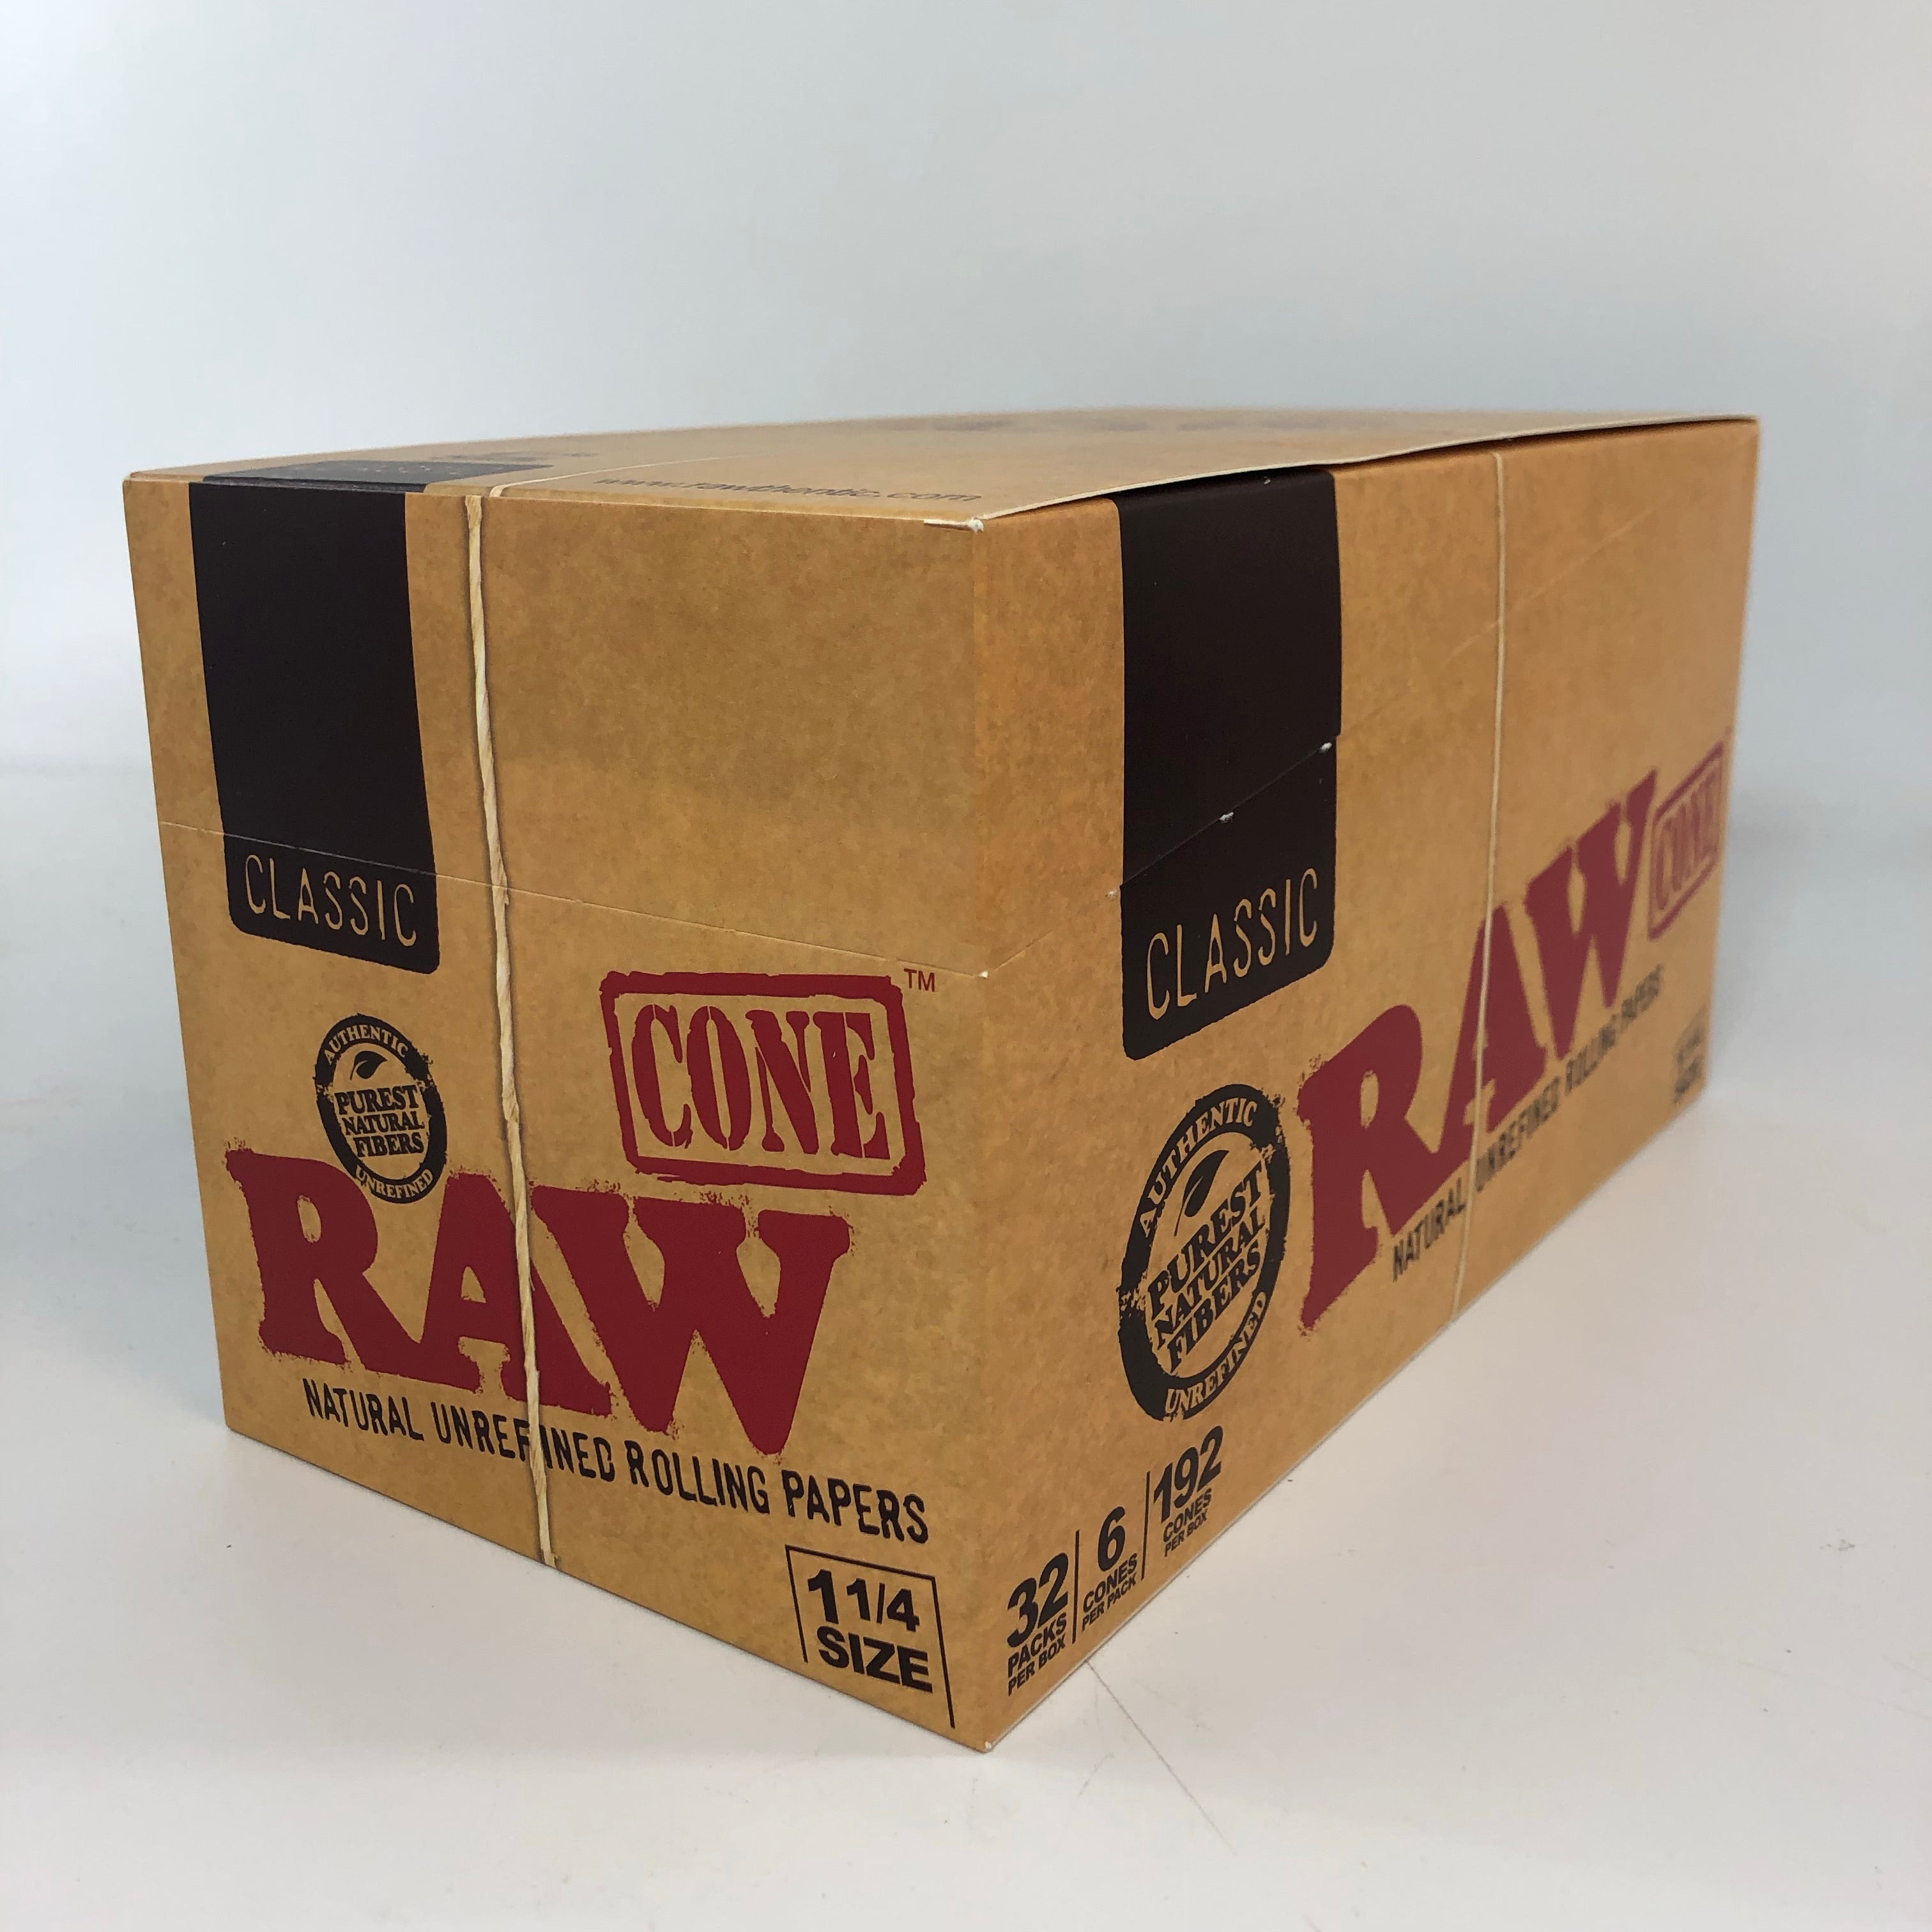 RAW CLASSIC 1 1/4 CONES - Pack of 6